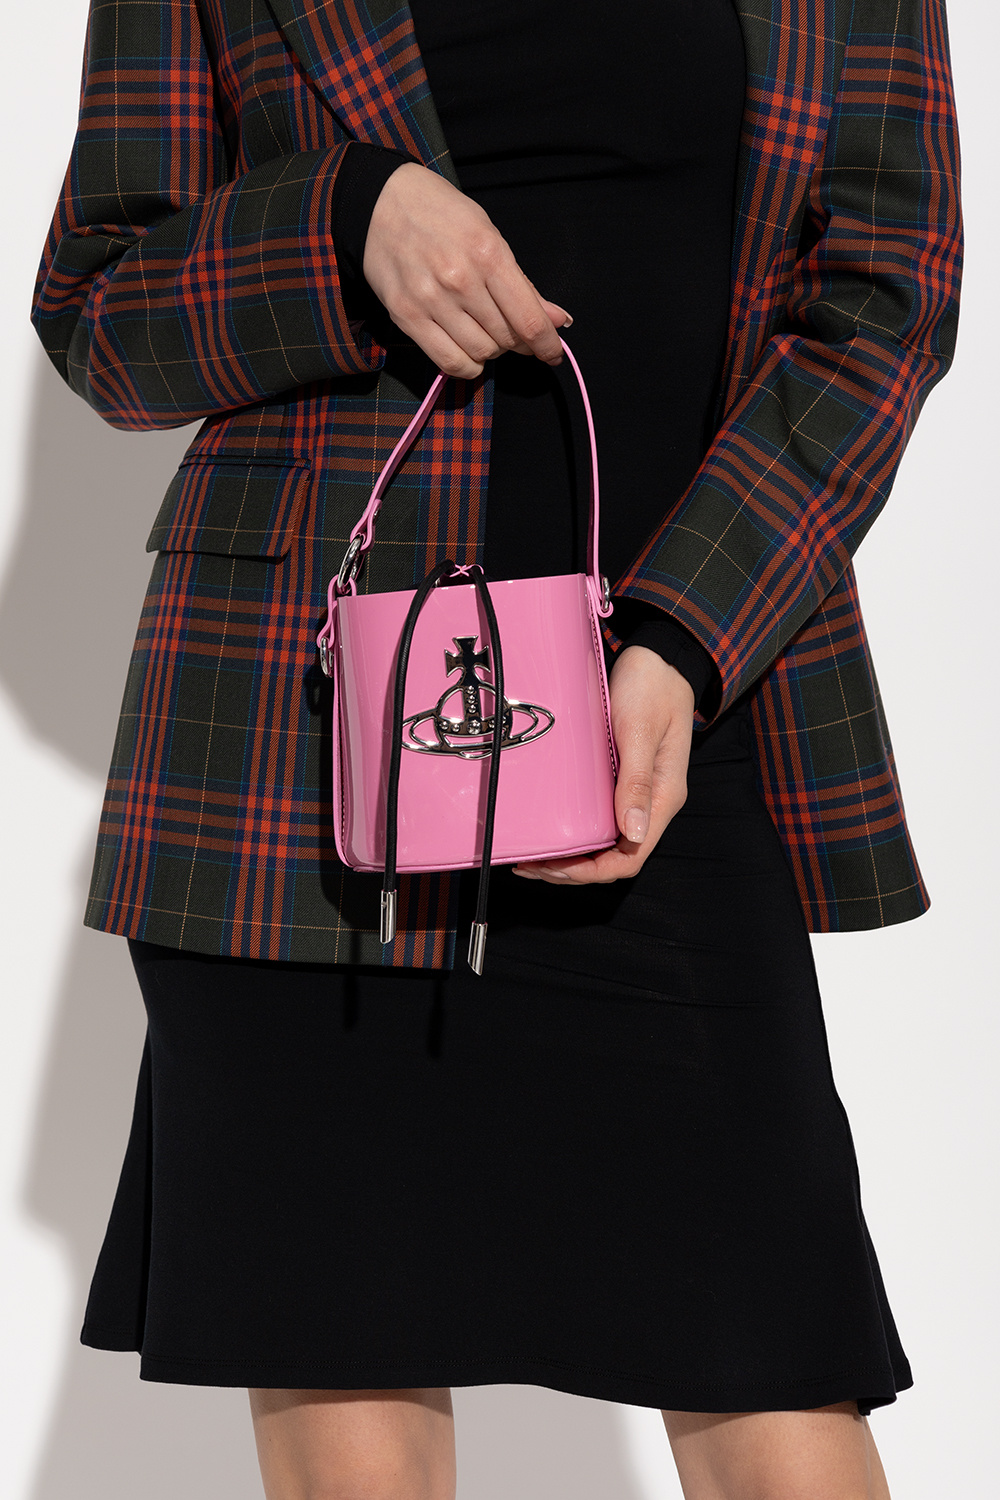 VIVIENNE WESTWOOD, Pink Men's Cross-body Bags